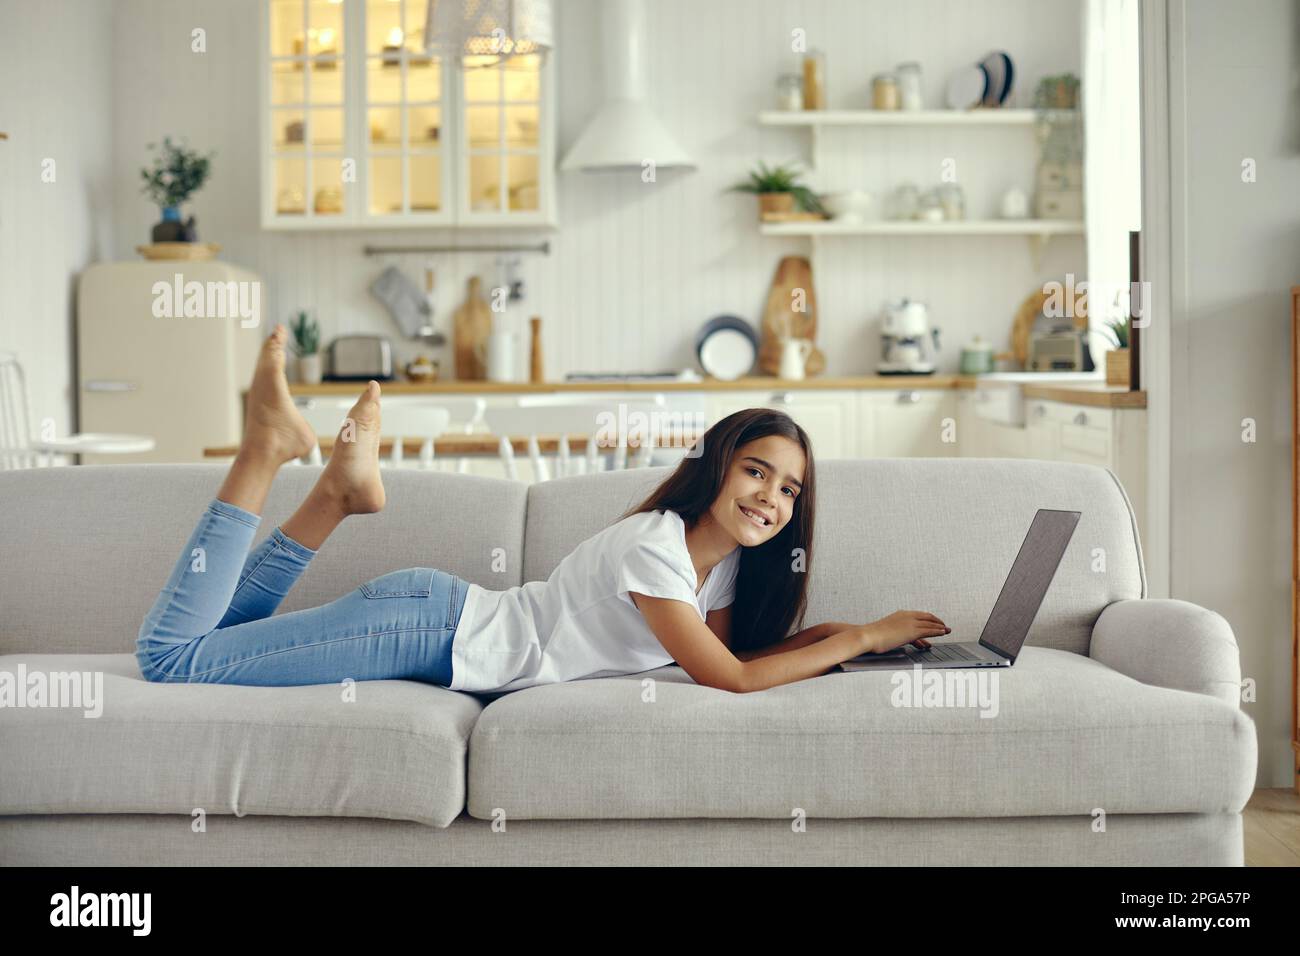 Süße 12s-jährige Frau benutzt Laptop auf dem Sofa im gemütlichen Wohnzimmer, posieren, lächeln, auf die Suchinformationen der Kamera schauen, Aufgaben machen, online lernen, mit chatten Stockfoto